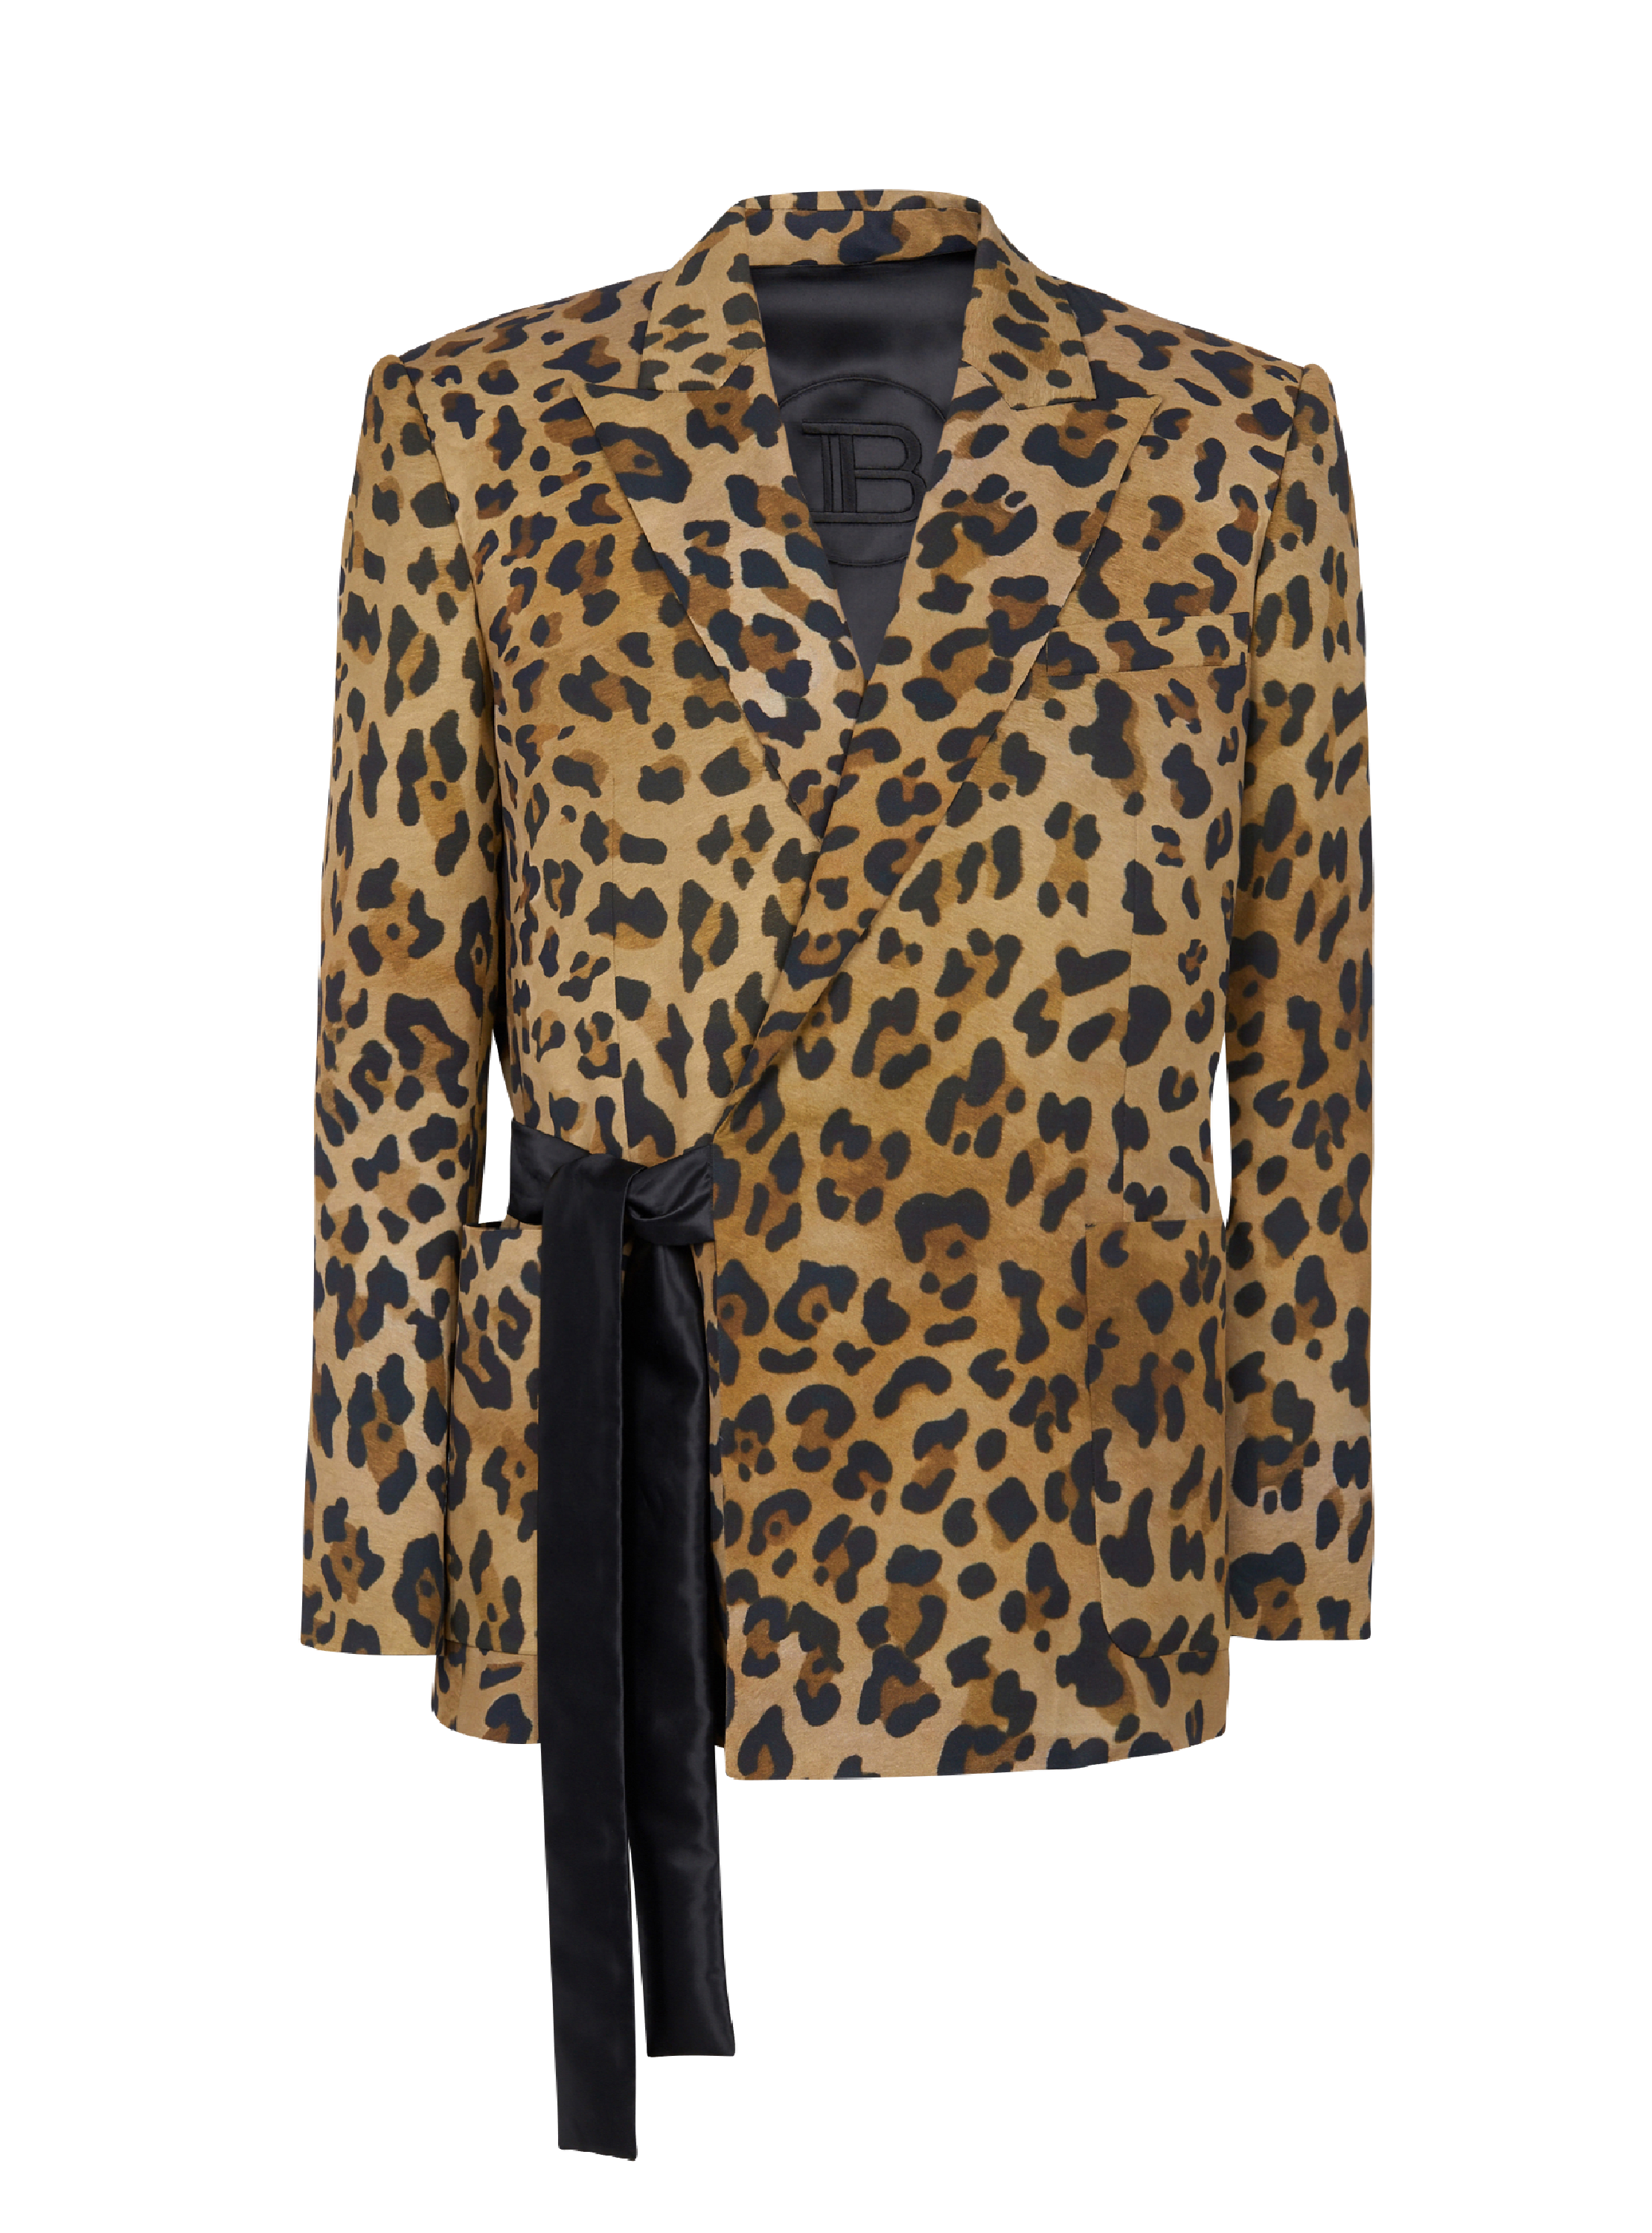 Veste à imprimé léopard asymétrique, marron, hi-res